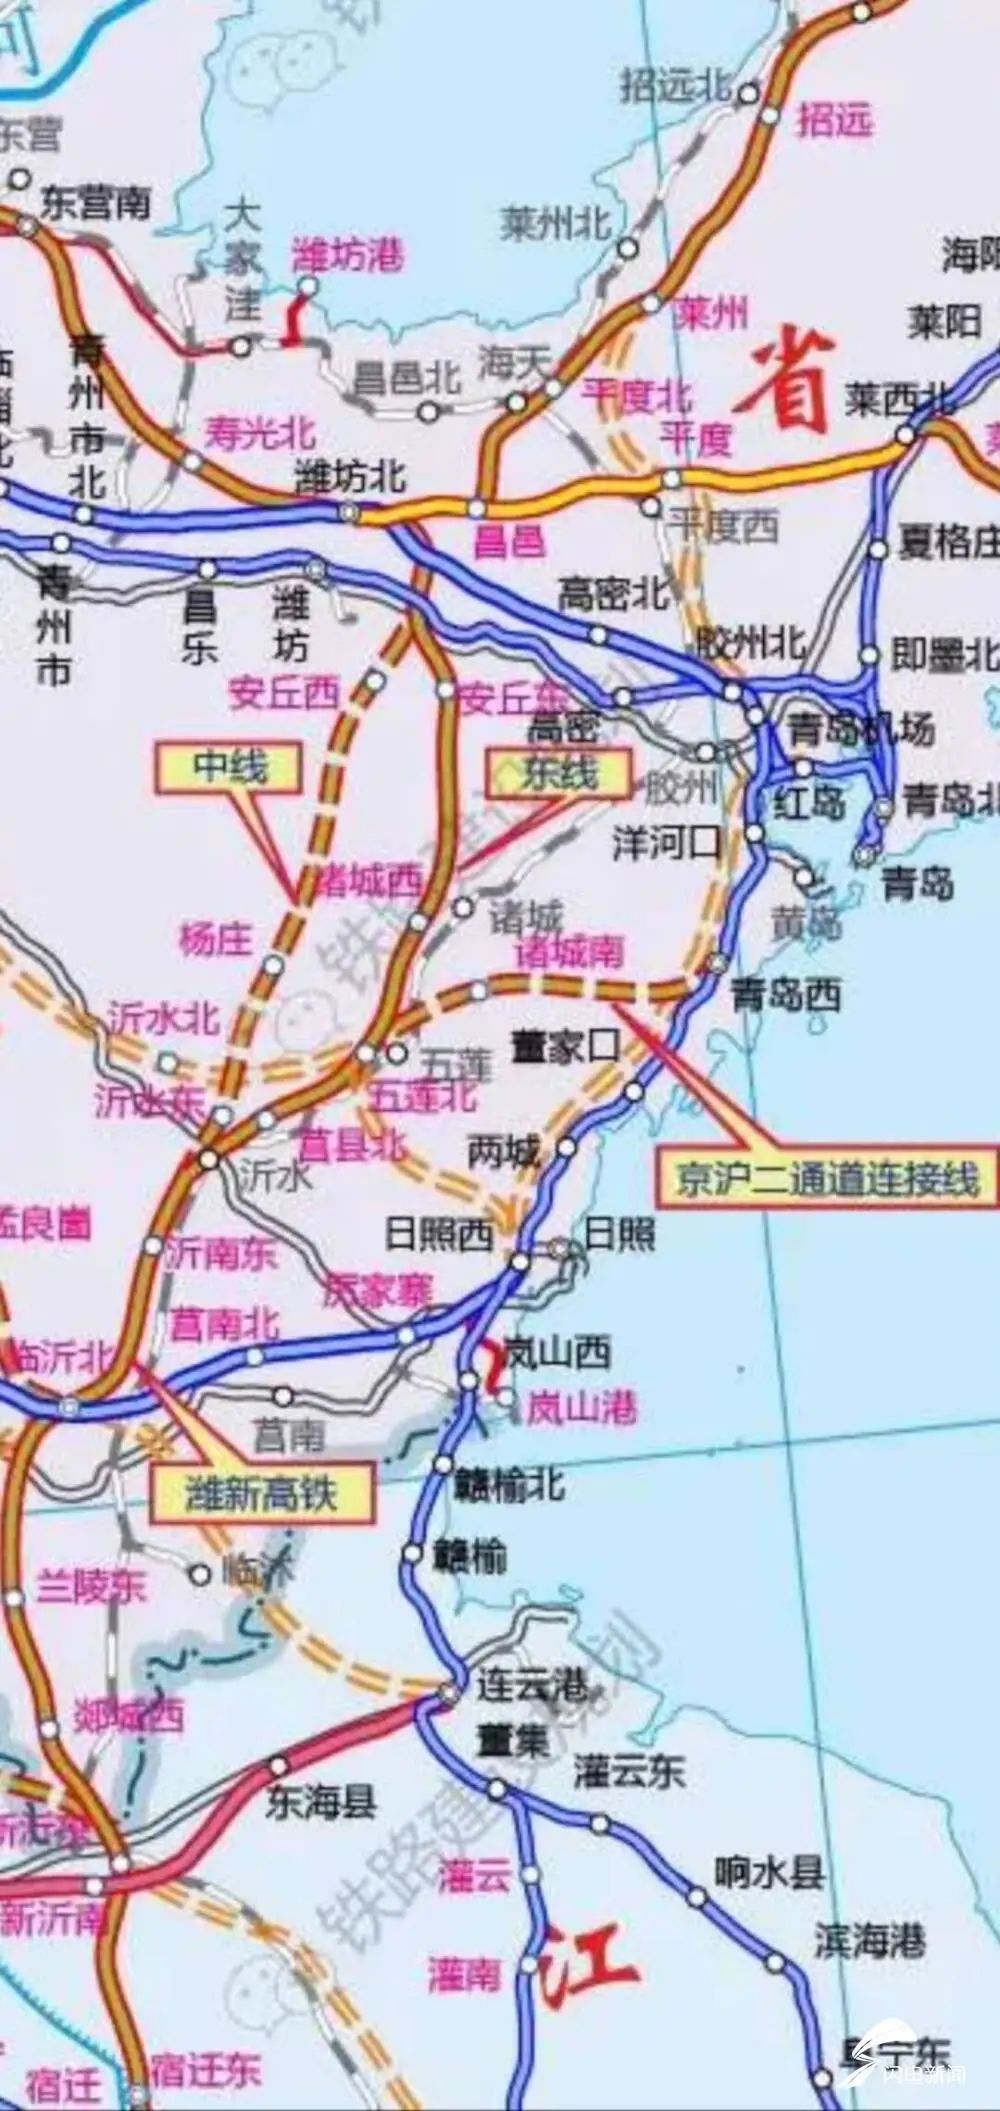 京沪高铁二通道潍坊至新沂段定了,潍坊拟设3个